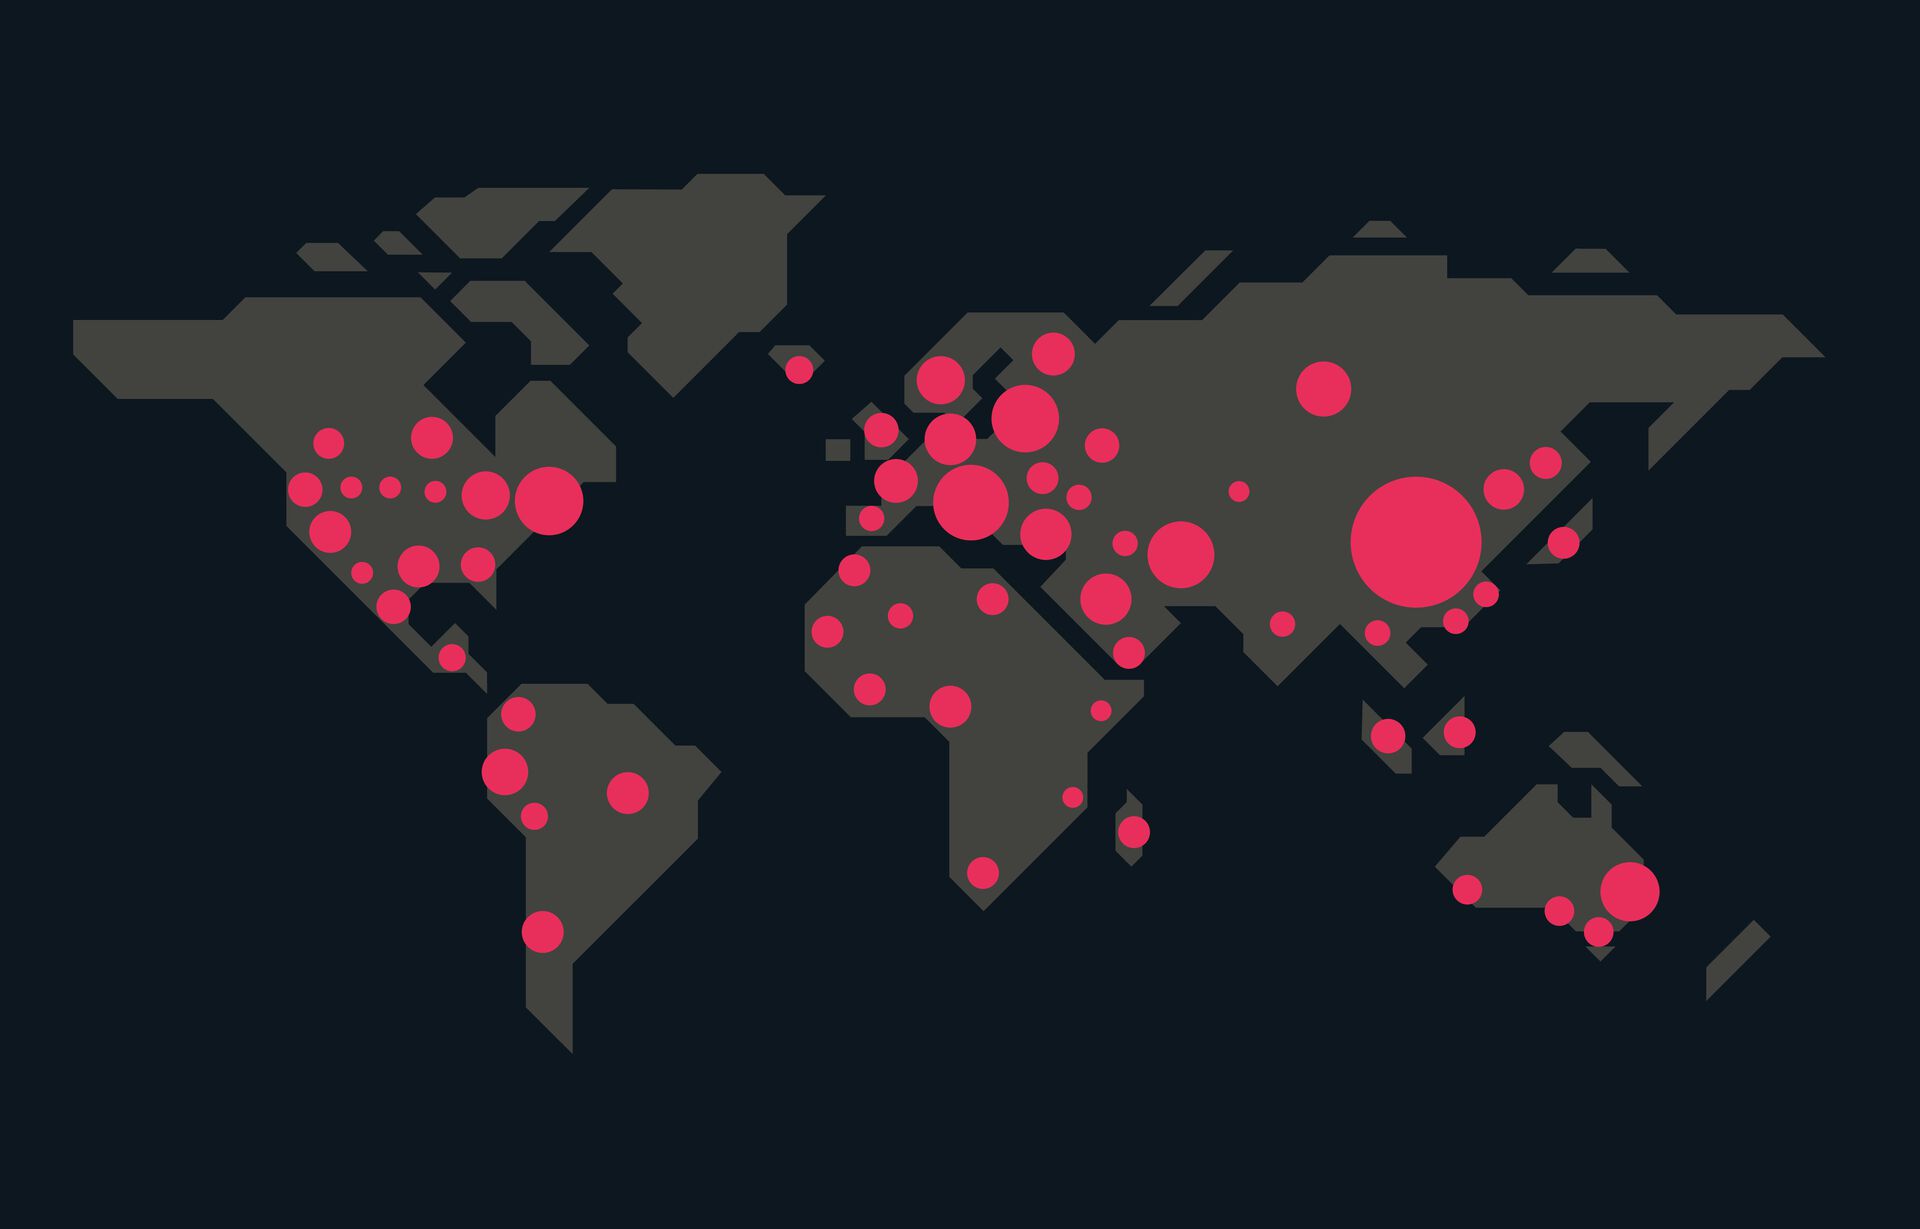 Grafikk over verdens land med røde prikker som illustrerer sykdomsutbrudd